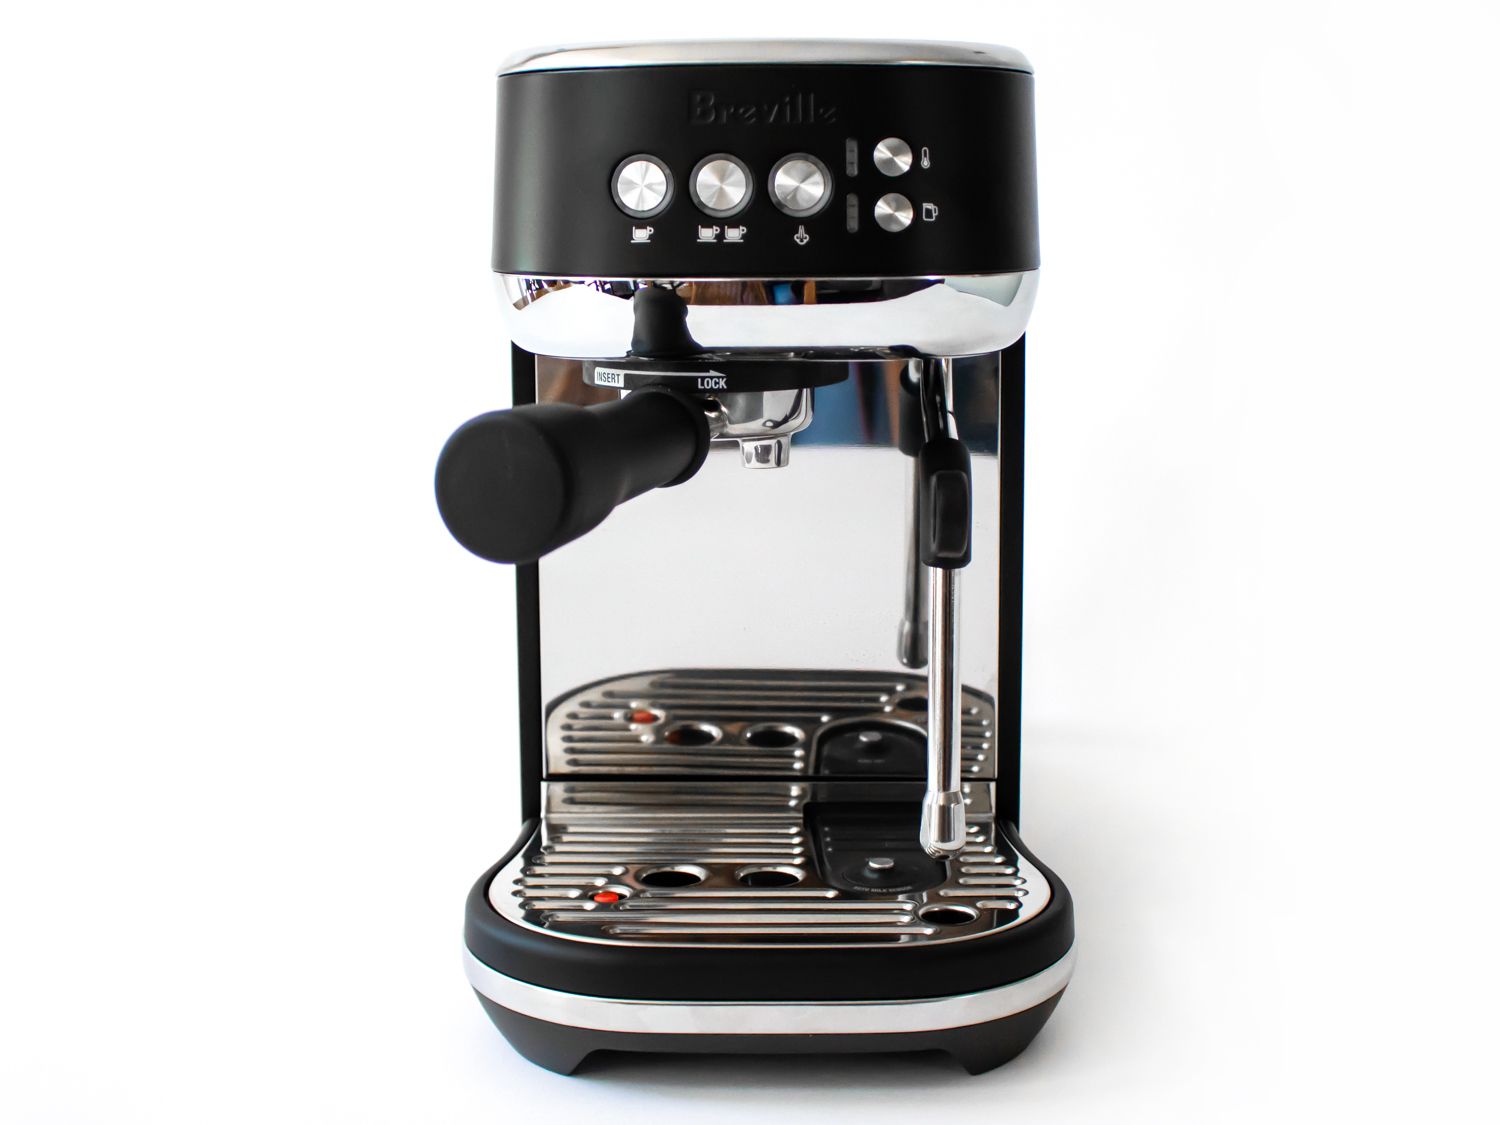 The Breville Bambino Plus espresso machine